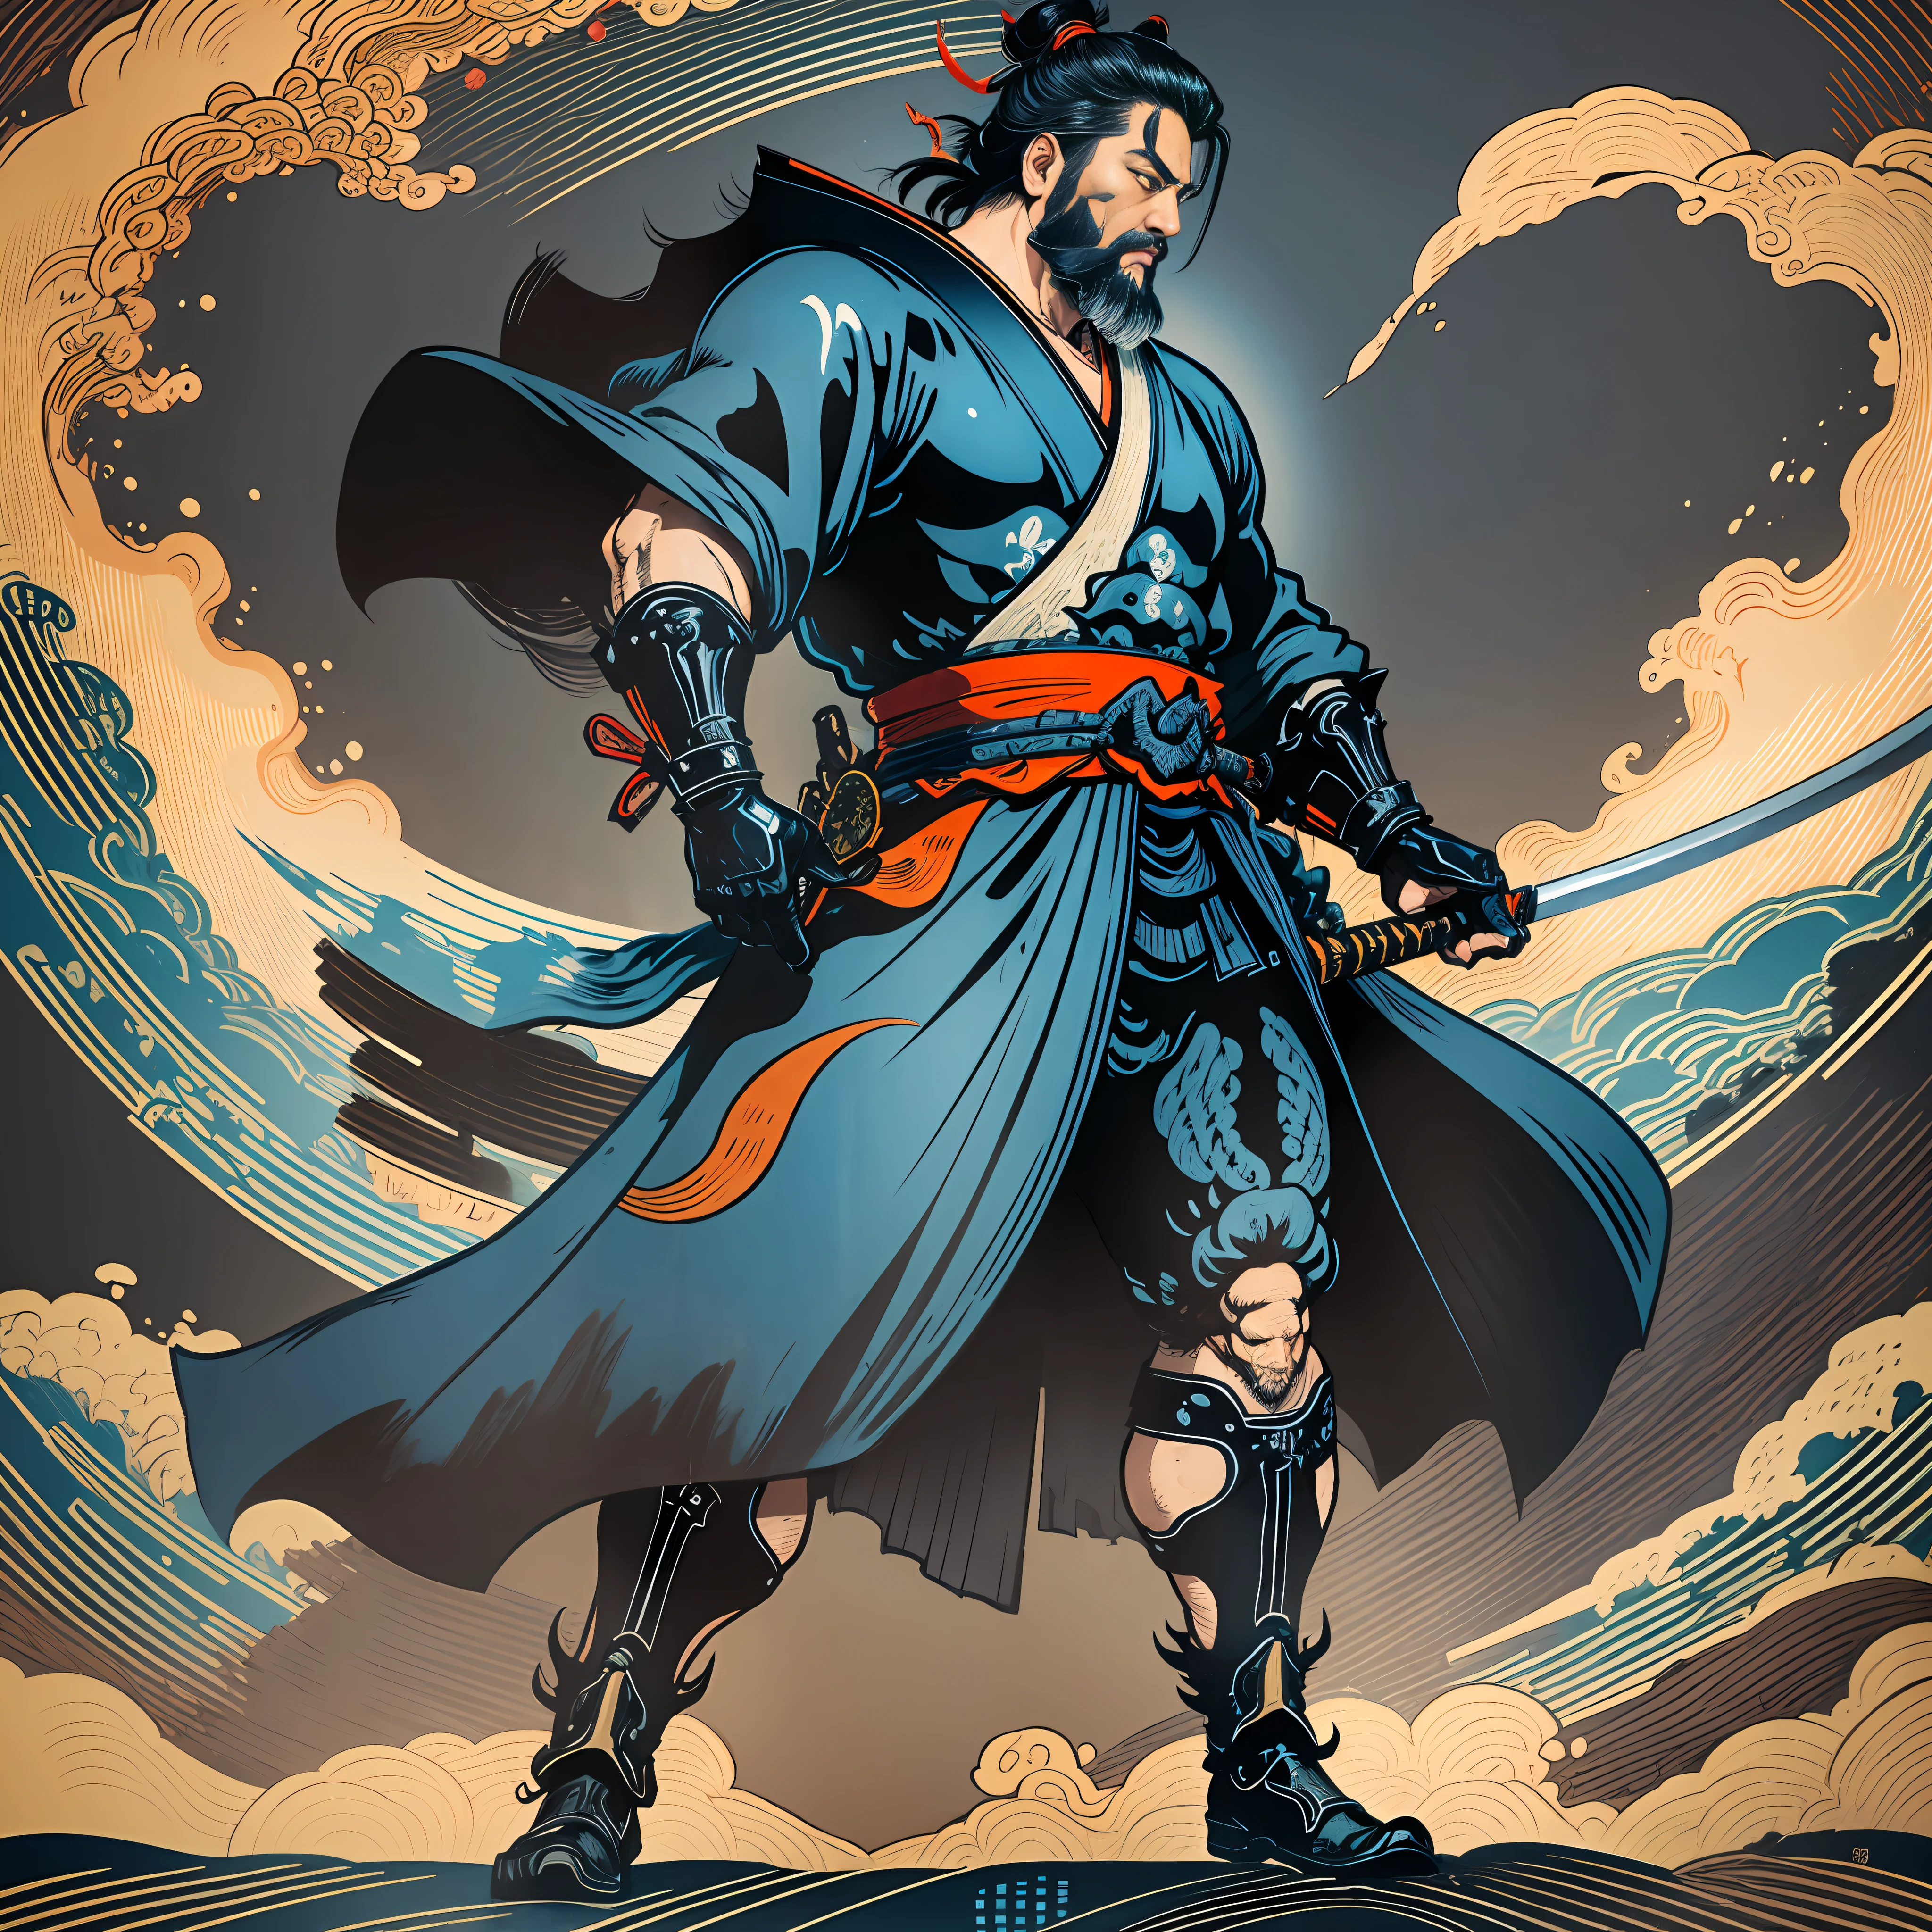 É uma pintura de corpo inteiro com cores naturais com desenhos de linhas no estilo Katsushika Hokusai.. O espadachim Miyamoto Musashi tem um corpo grande como um homem forte. Samurais do Japão. Com uma expressão digna, mas viril, de determinação, ele enfrenta espíritos malignos. Ele tem cabelo curto preto e um curto, barba aparada. Sua parte superior do corpo é coberta com um quimono preto jato com uma textura brilhante, e seu hakama é de joelhos. Na mão direita ele segura uma espada japonesa com uma parte de espada mais longa. na mais alta qualidade, obra-prima de alta resolução estilo ukiyo-e relâmpago e chamas giratórias. entre eles, Miyamoto Musashi está de costas retas, De frente.